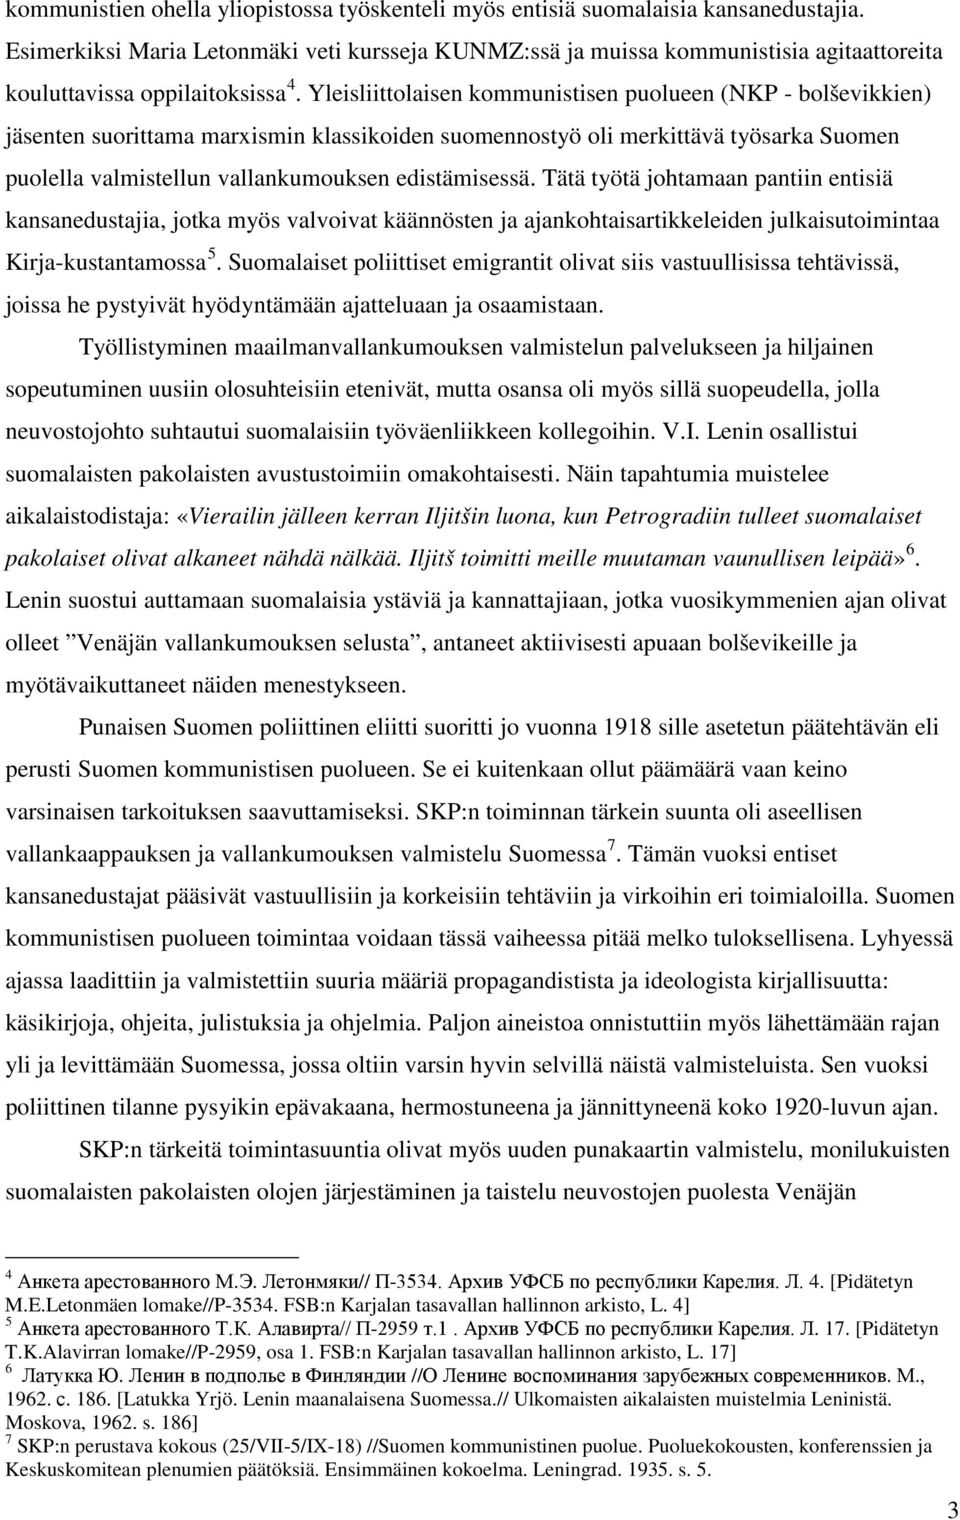 Yleisliittolaisen kommunistisen puolueen (NKP - bolševikkien) jäsenten suorittama marxismin klassikoiden suomennostyö oli merkittävä työsarka Suomen puolella valmistellun vallankumouksen